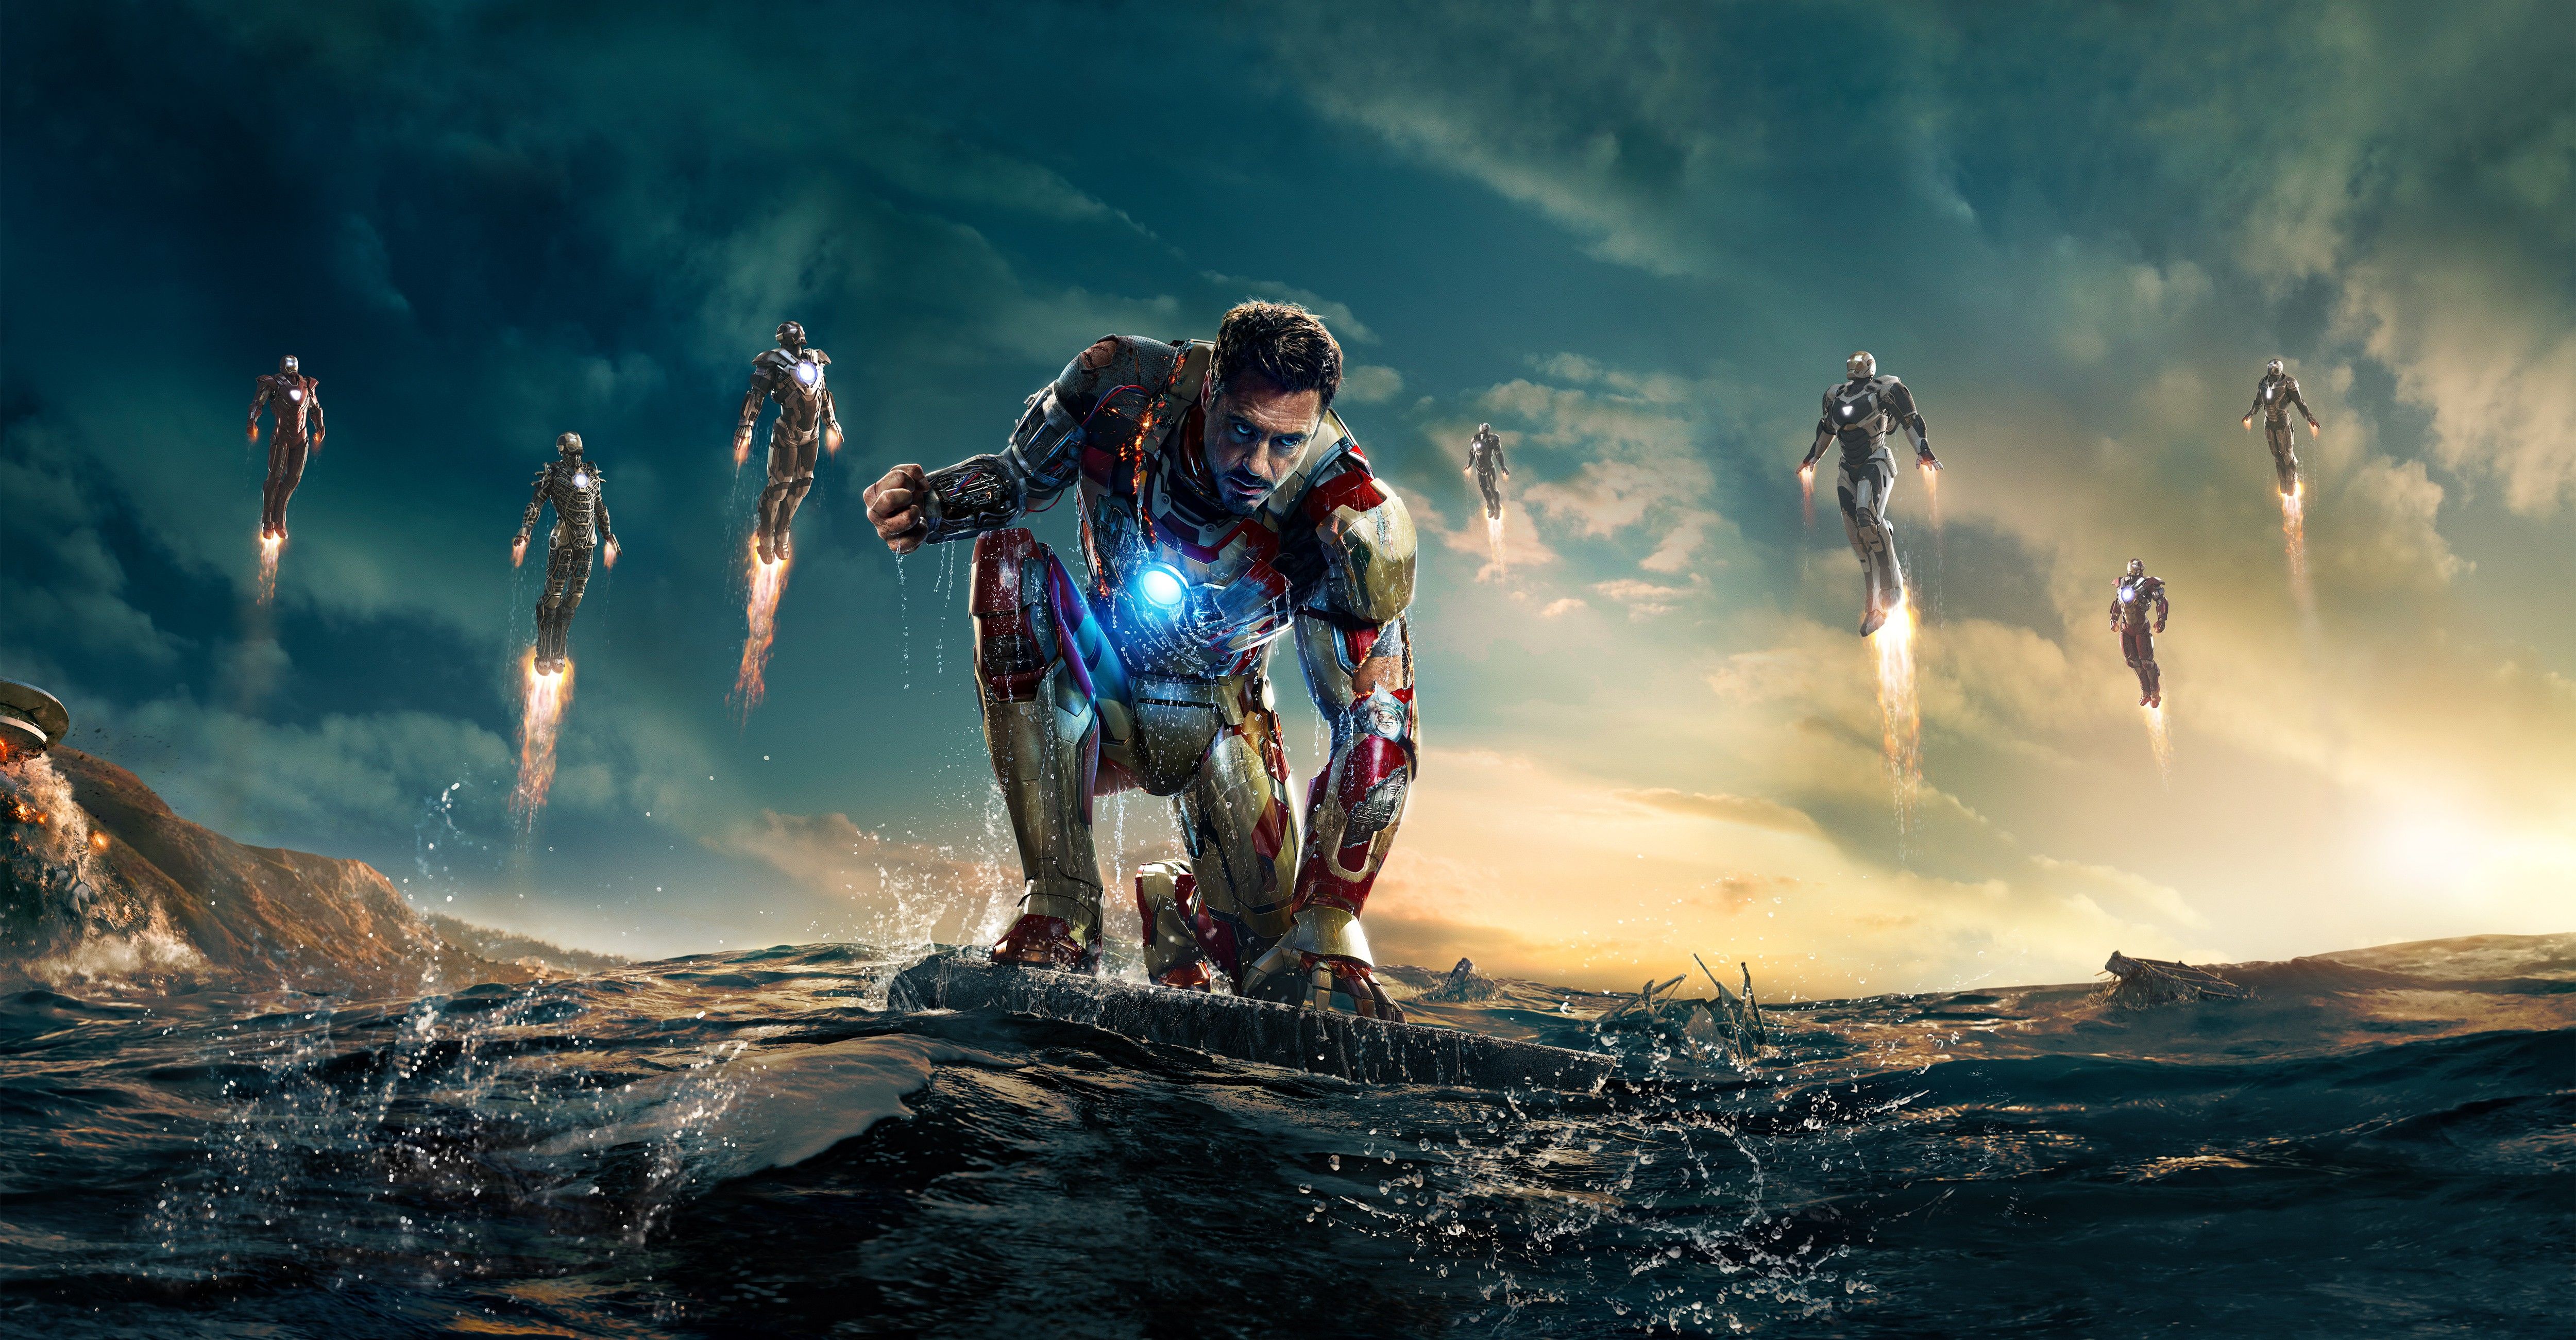 Жч 2026. Железный человек 3. Тони Старк. «Железный человек 3» (Iron man 3, 2013).